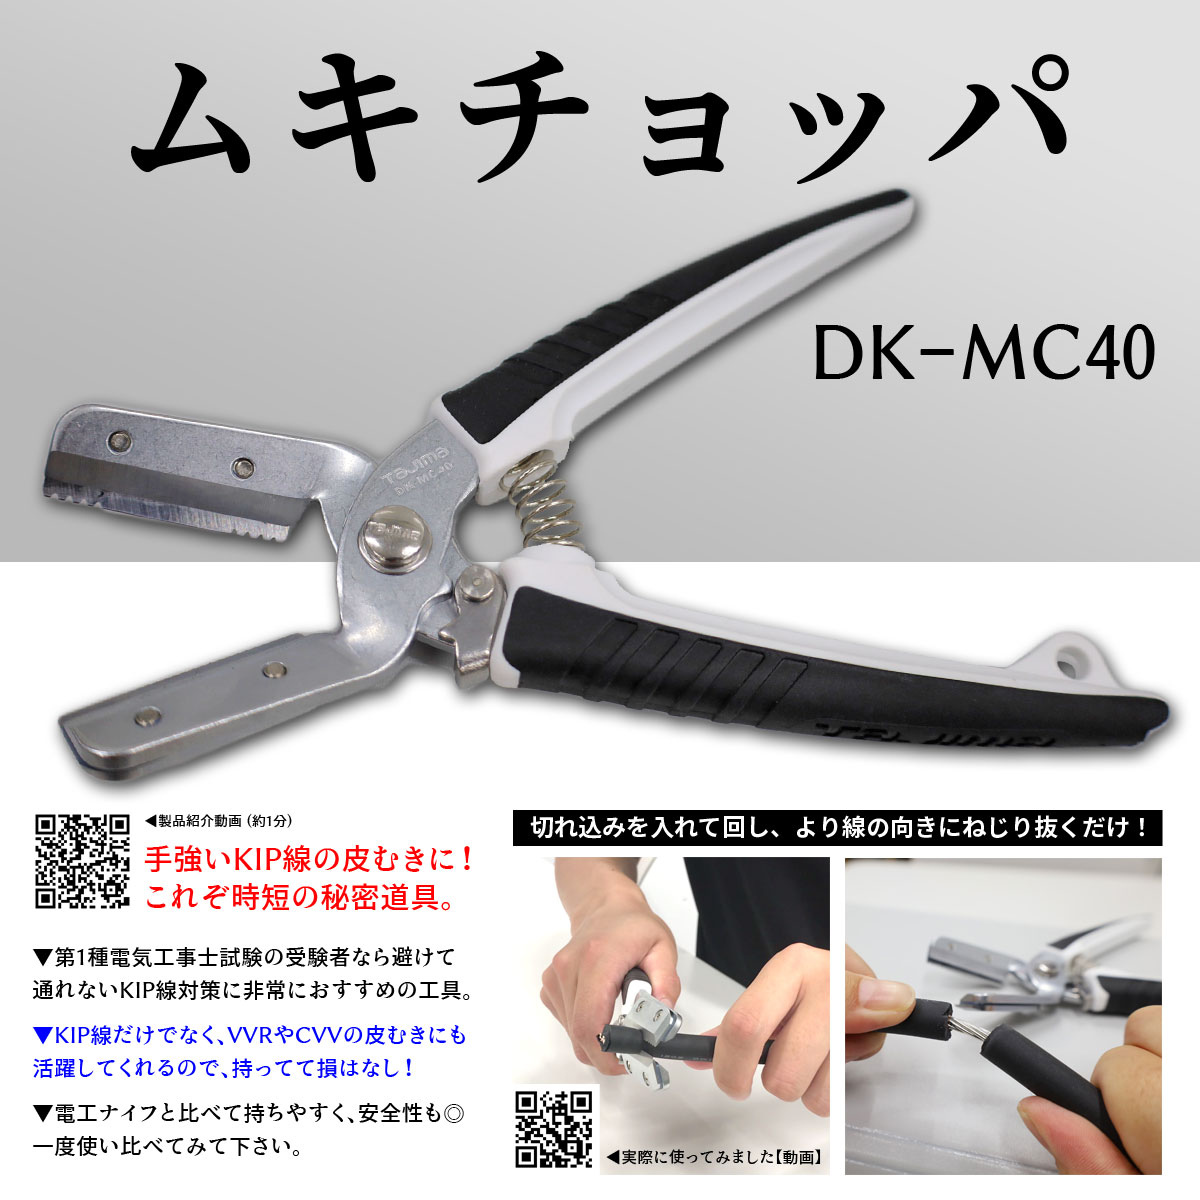 DK-MC40